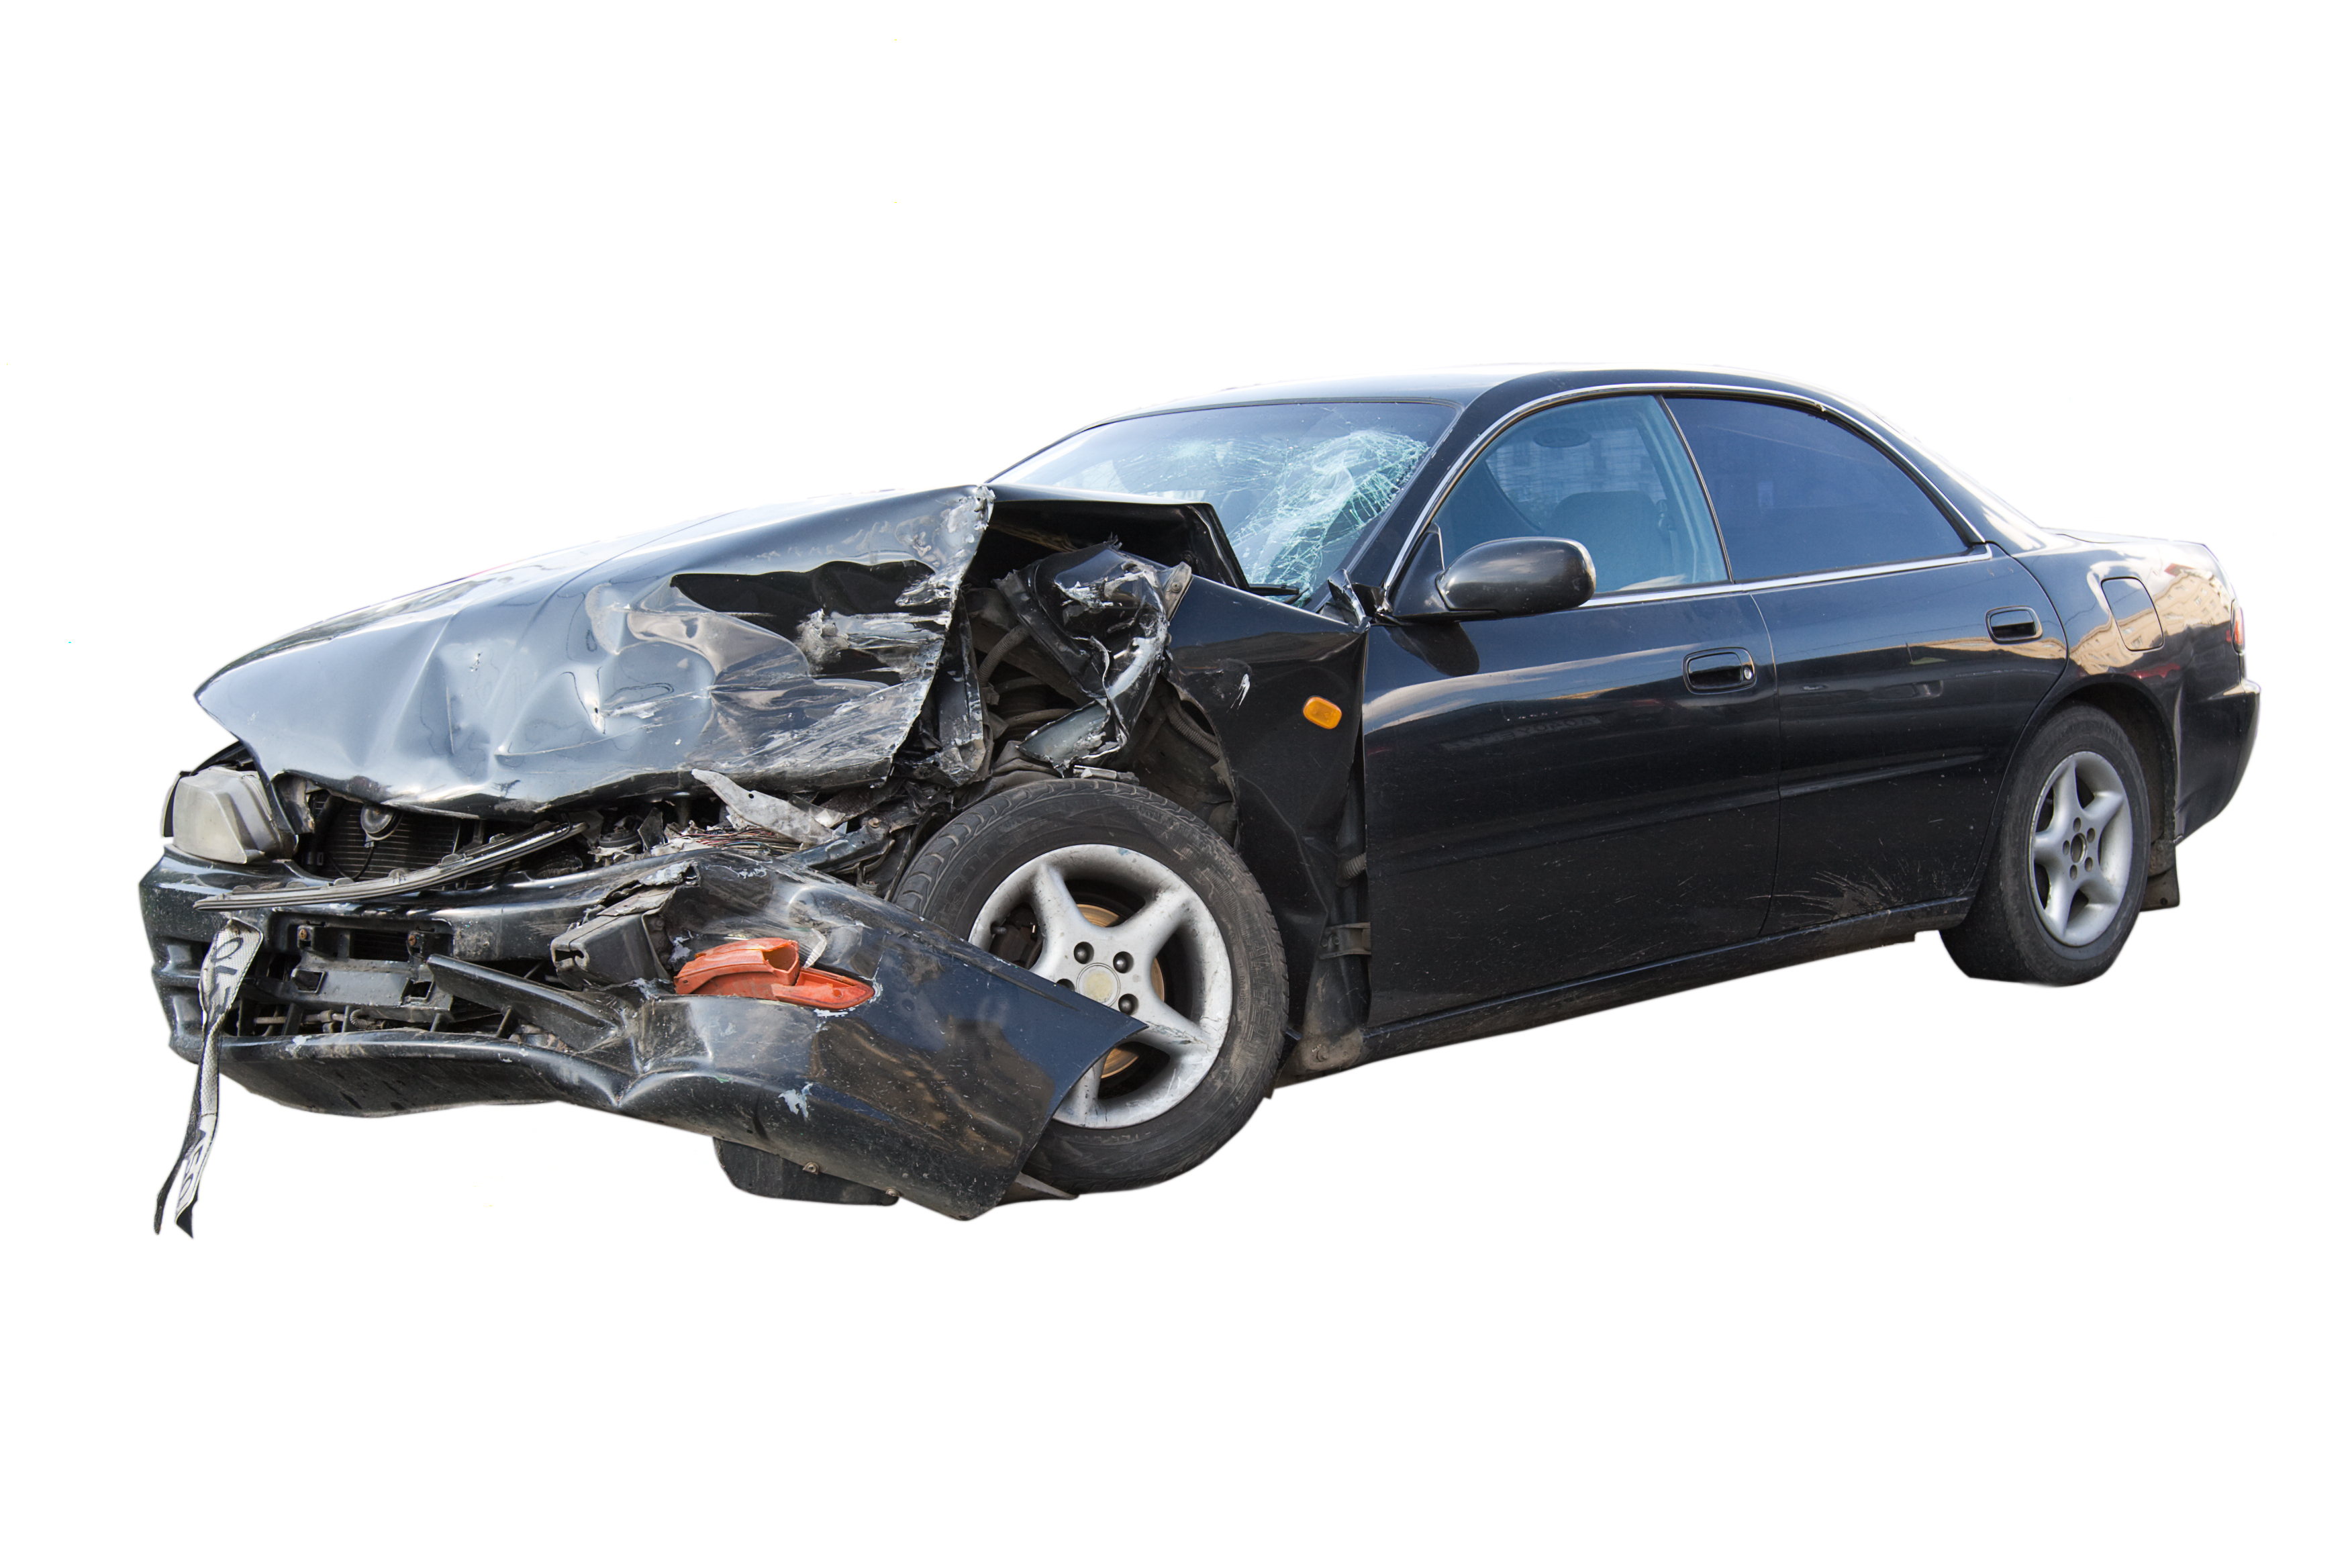 Ein schwer beschädigtes Auto. | Quelle: Shutterstock